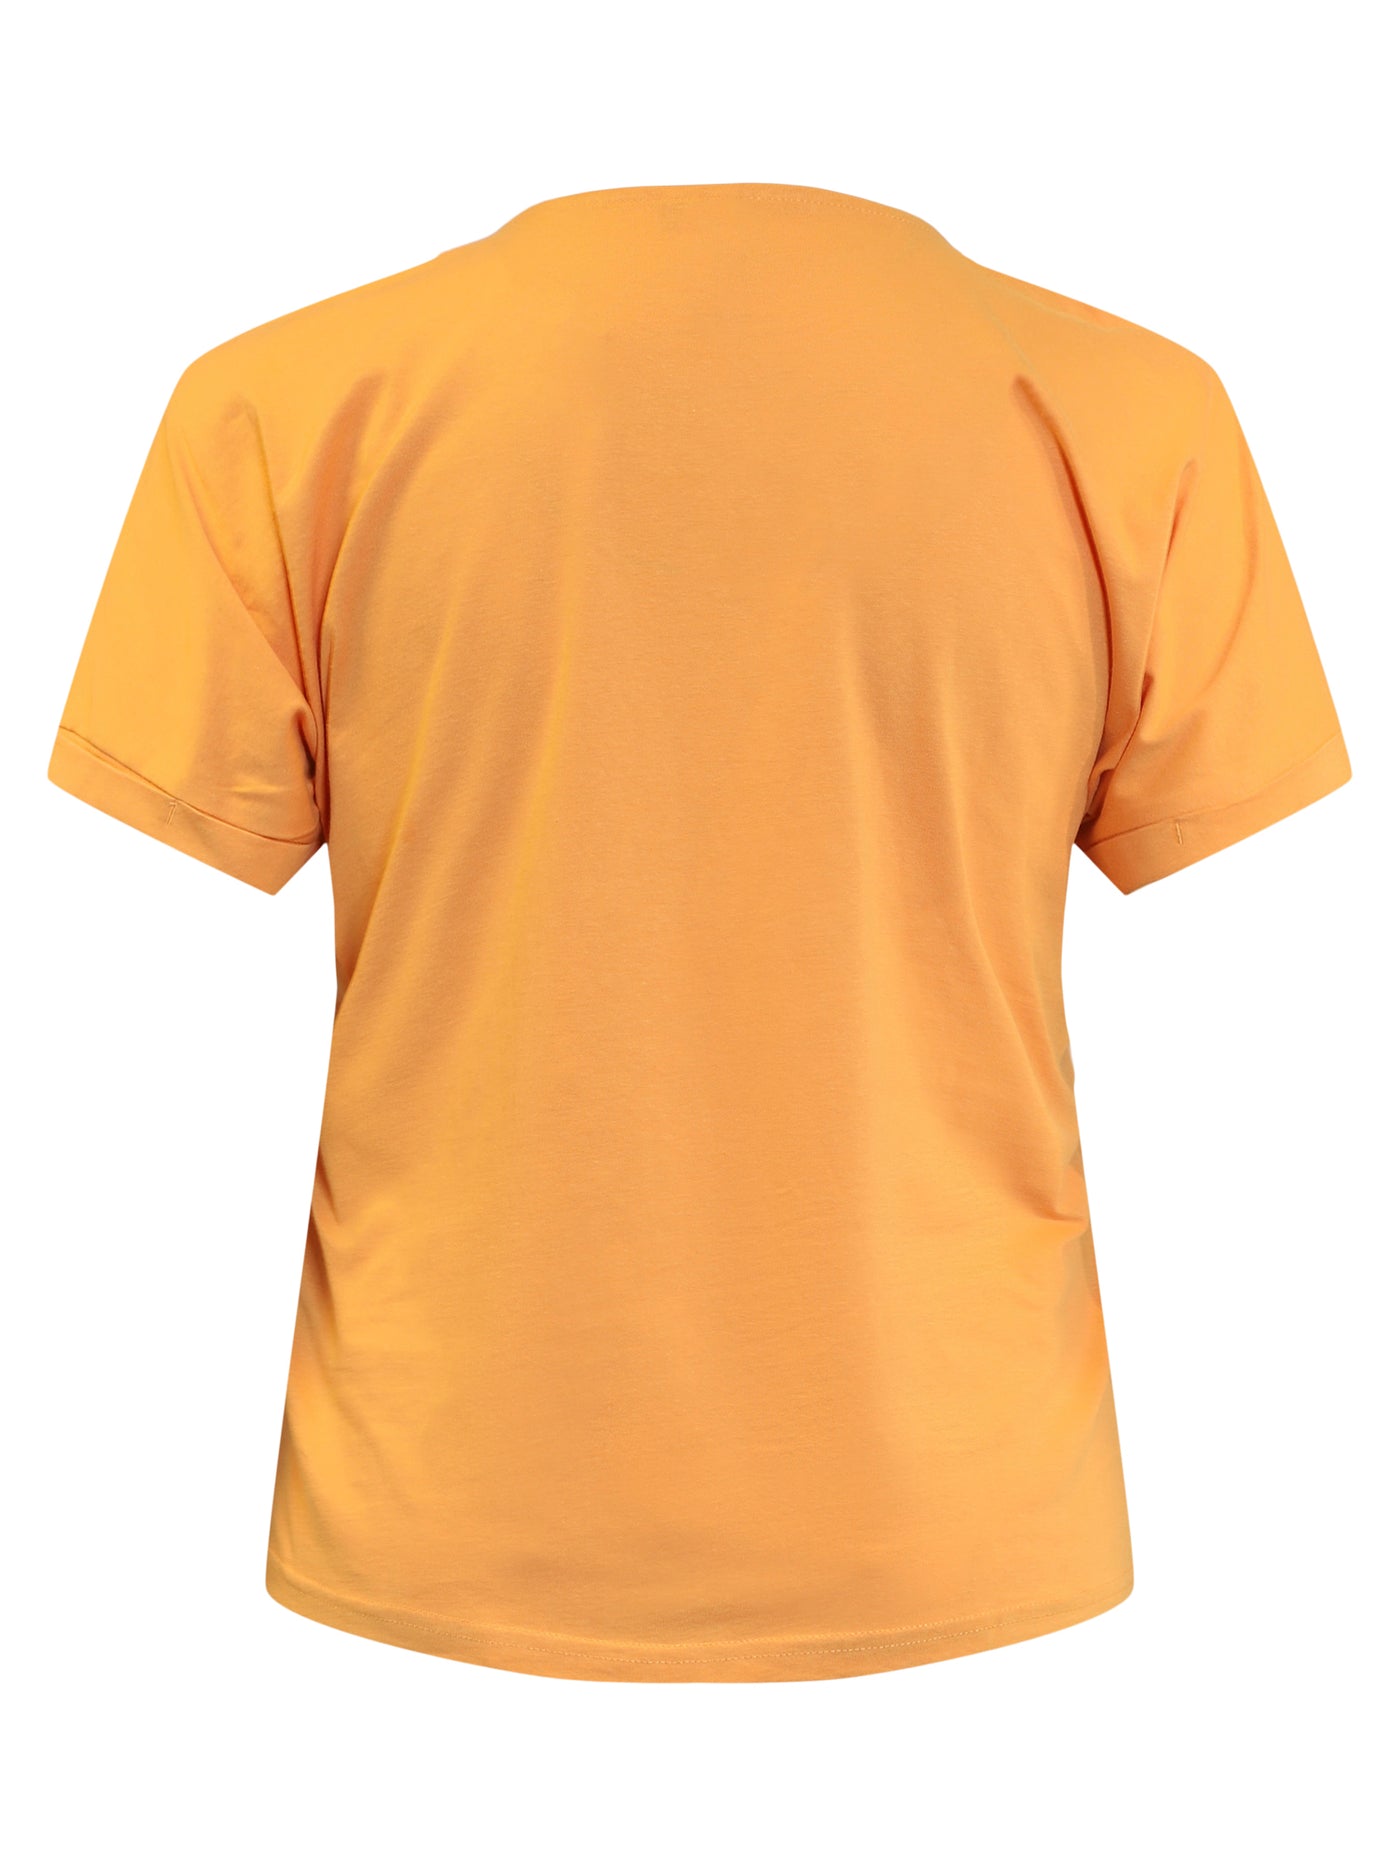 T-shirt Kortærmet - Apricot Tan